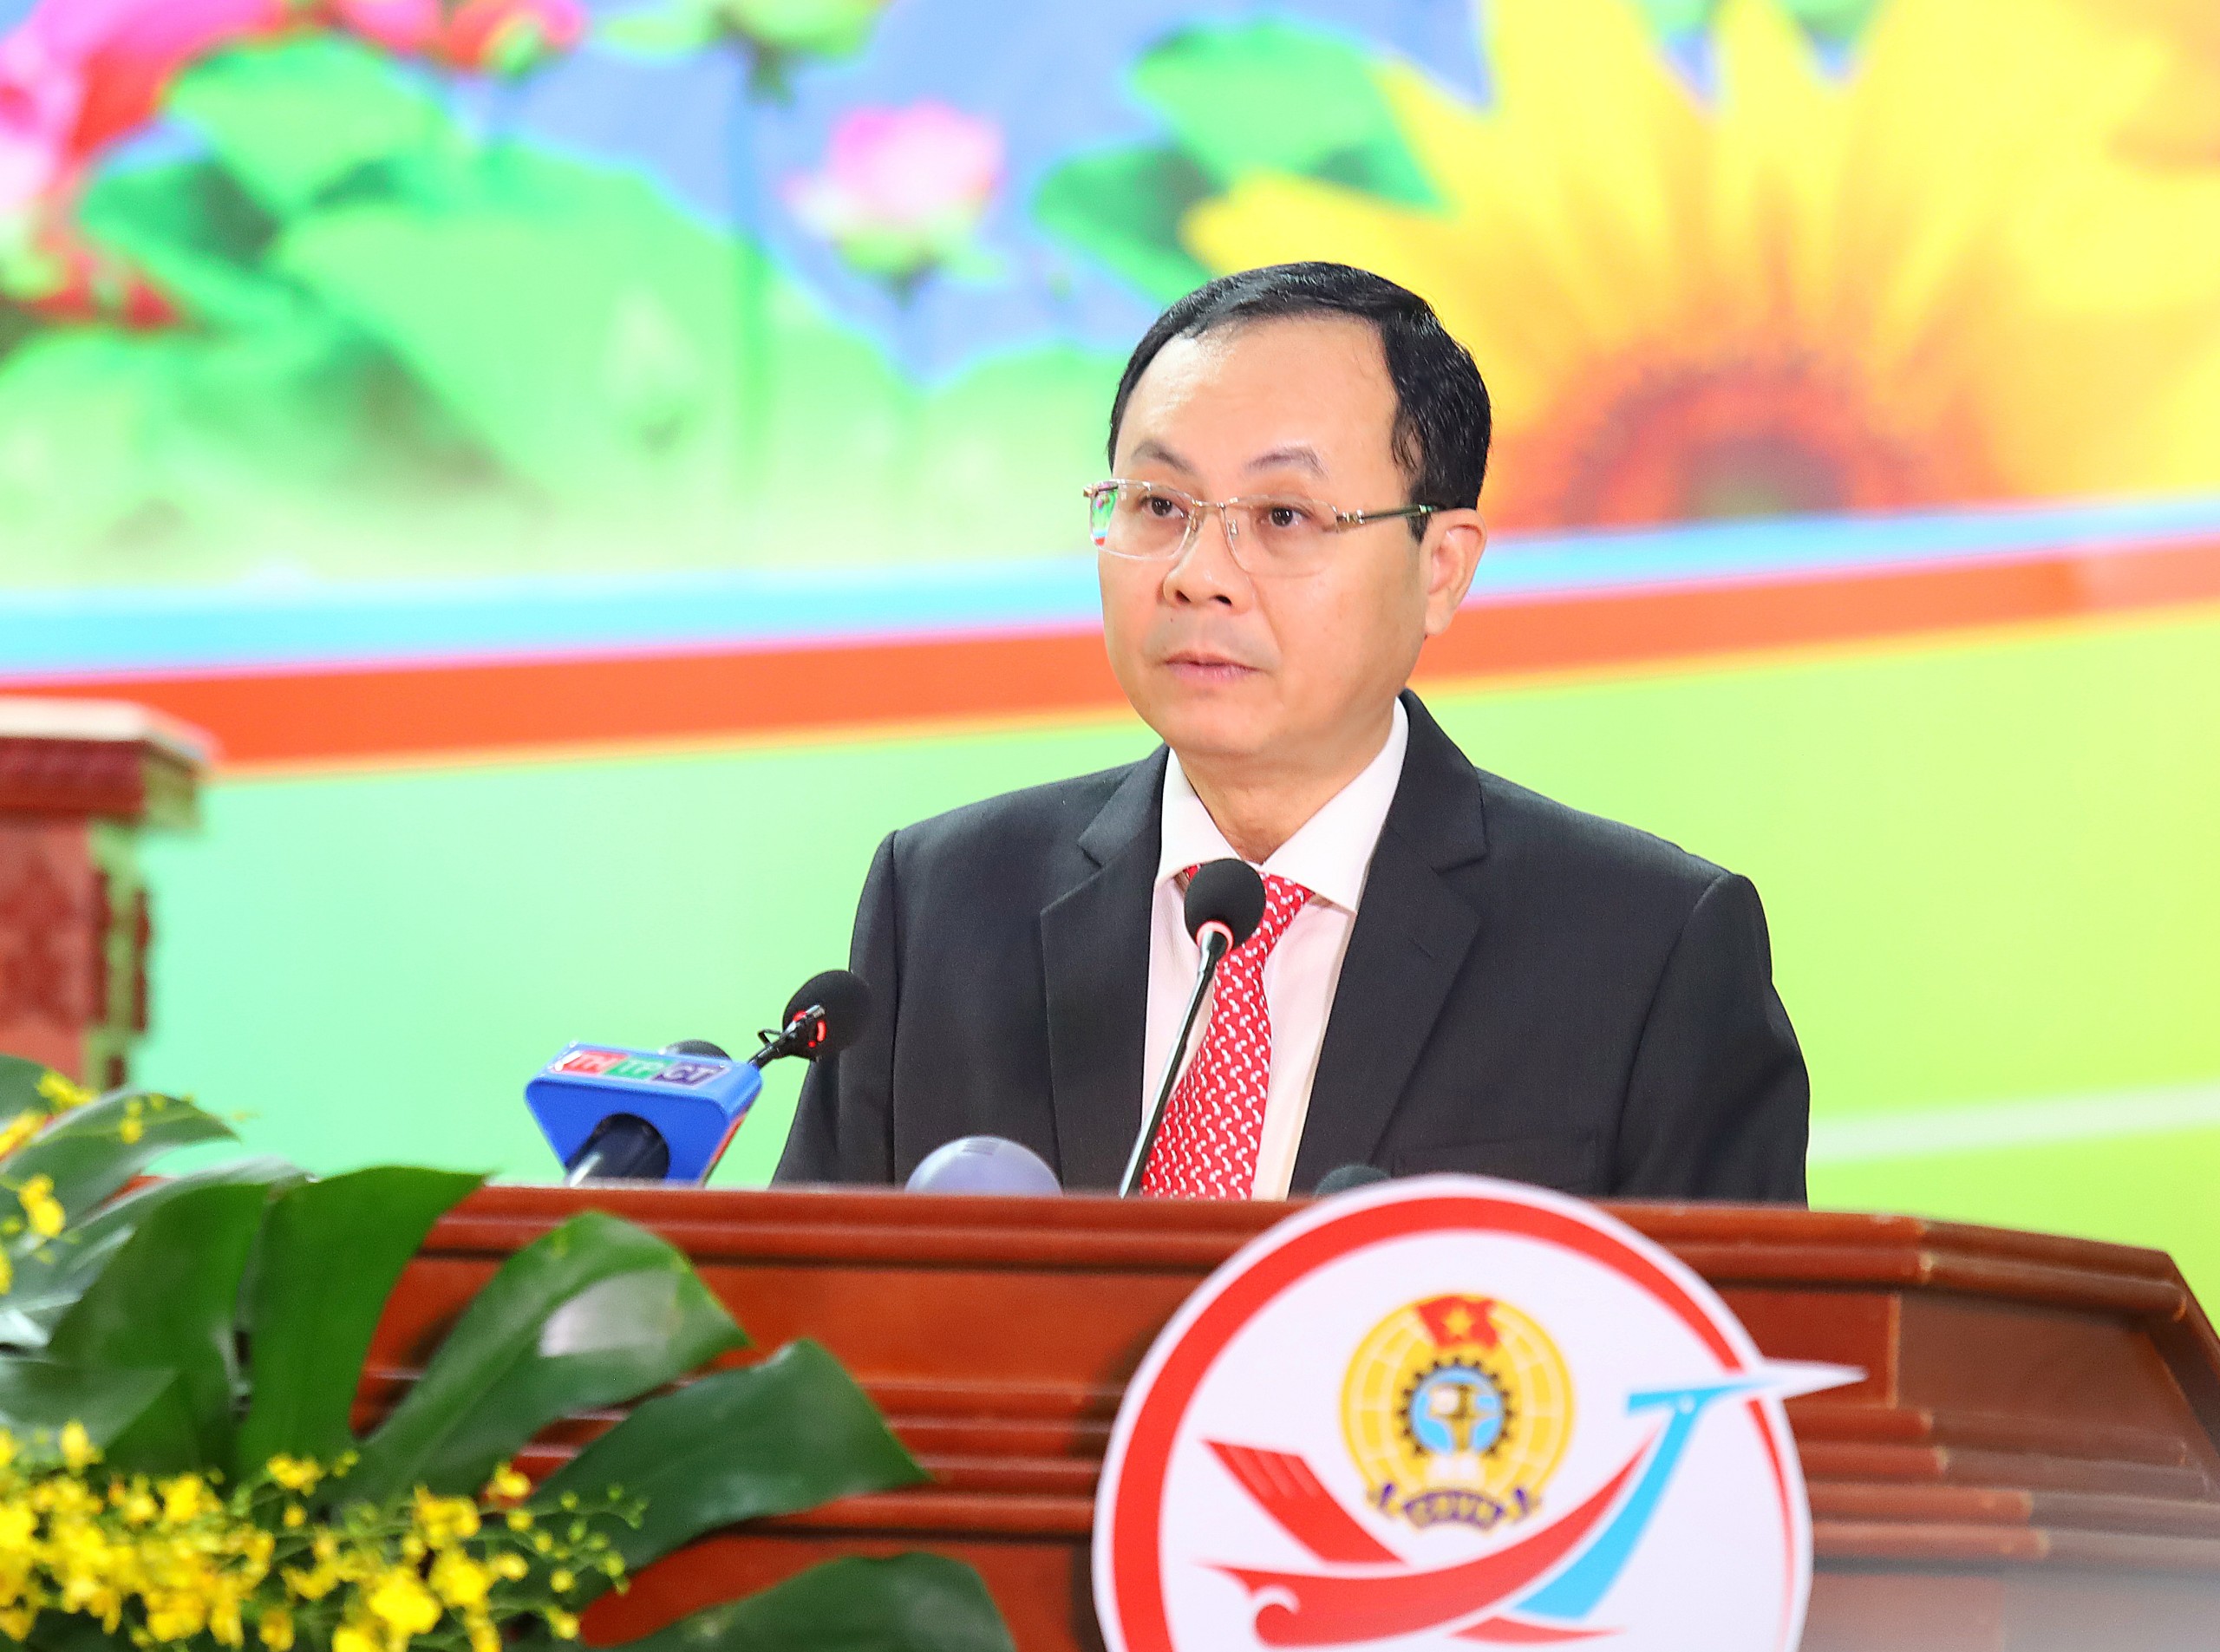 Ông Nguyễn Văn Hiếu - Ủy viên dự khuyết BCH Trung ương Đảng, Bí thư Thành ủy Cần Thơ phát biểu tại đại hội.